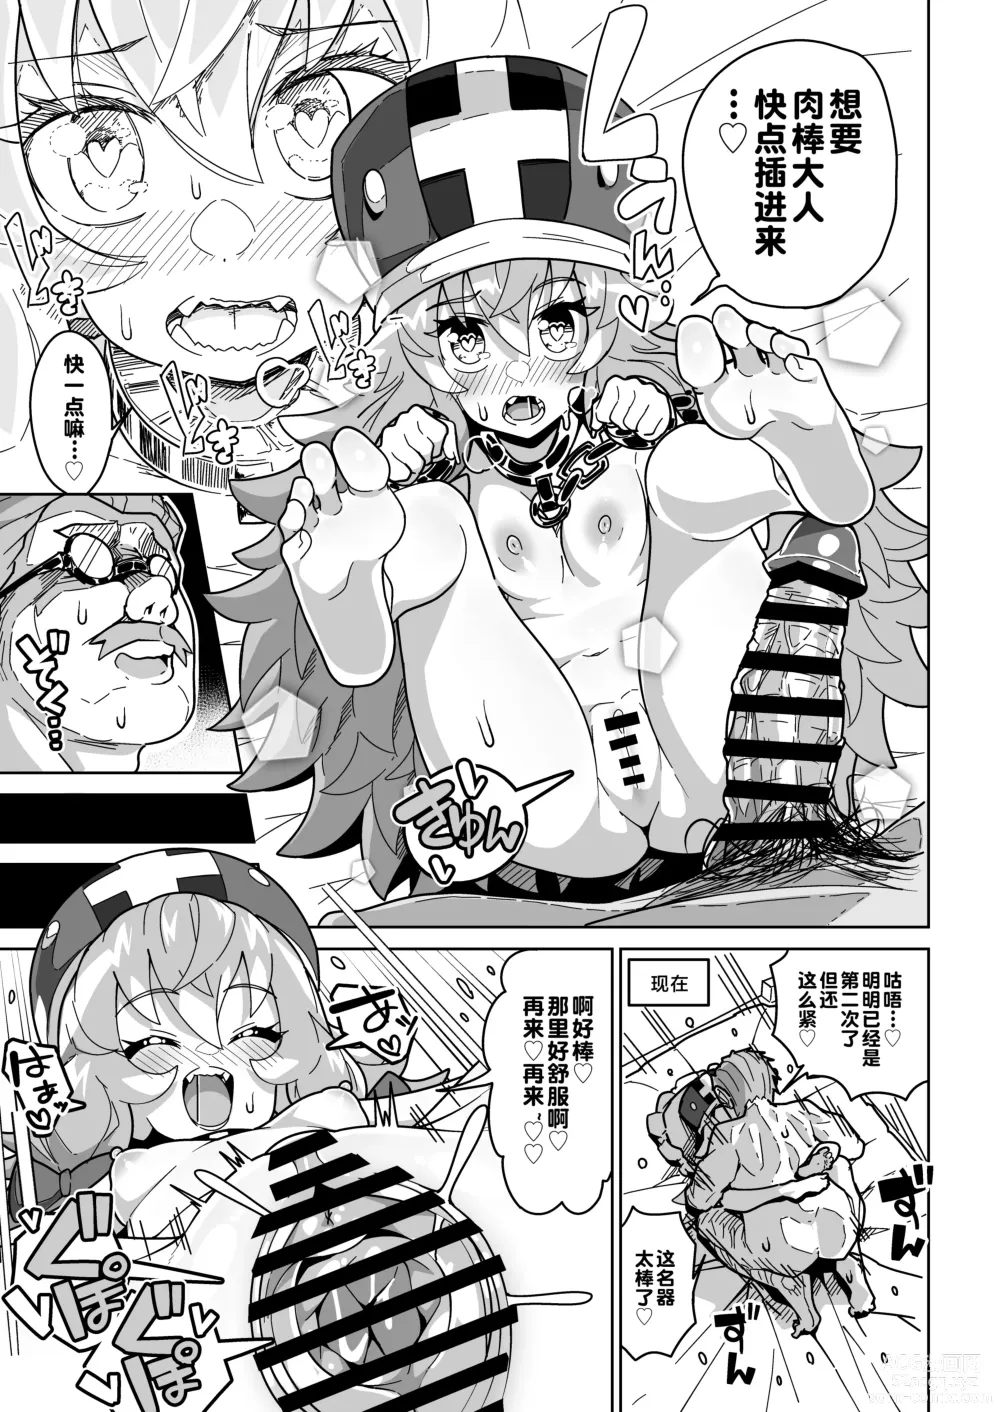 Page 52 of doujinshi Ningendomo Wa Tenohira no Ue!!